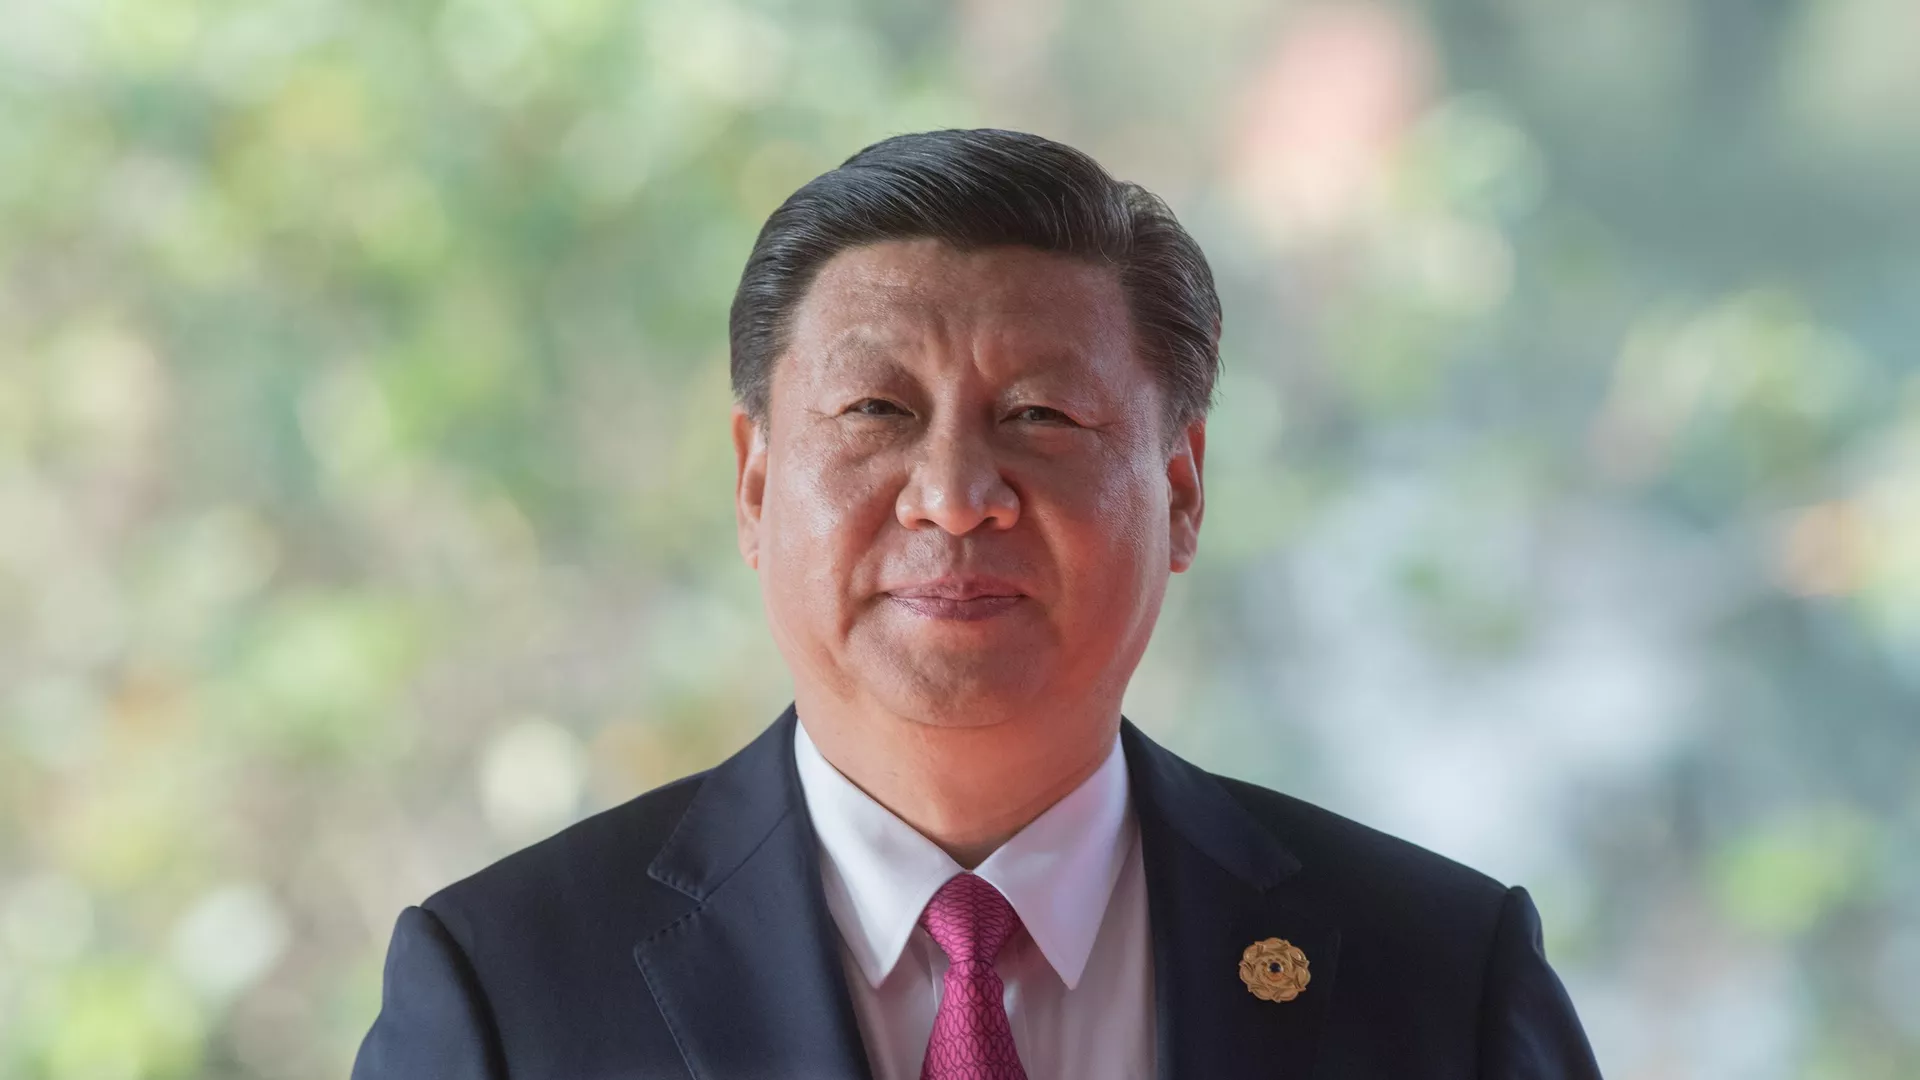 Си Цзиньпин заявил о необходимости реформирования ВТО